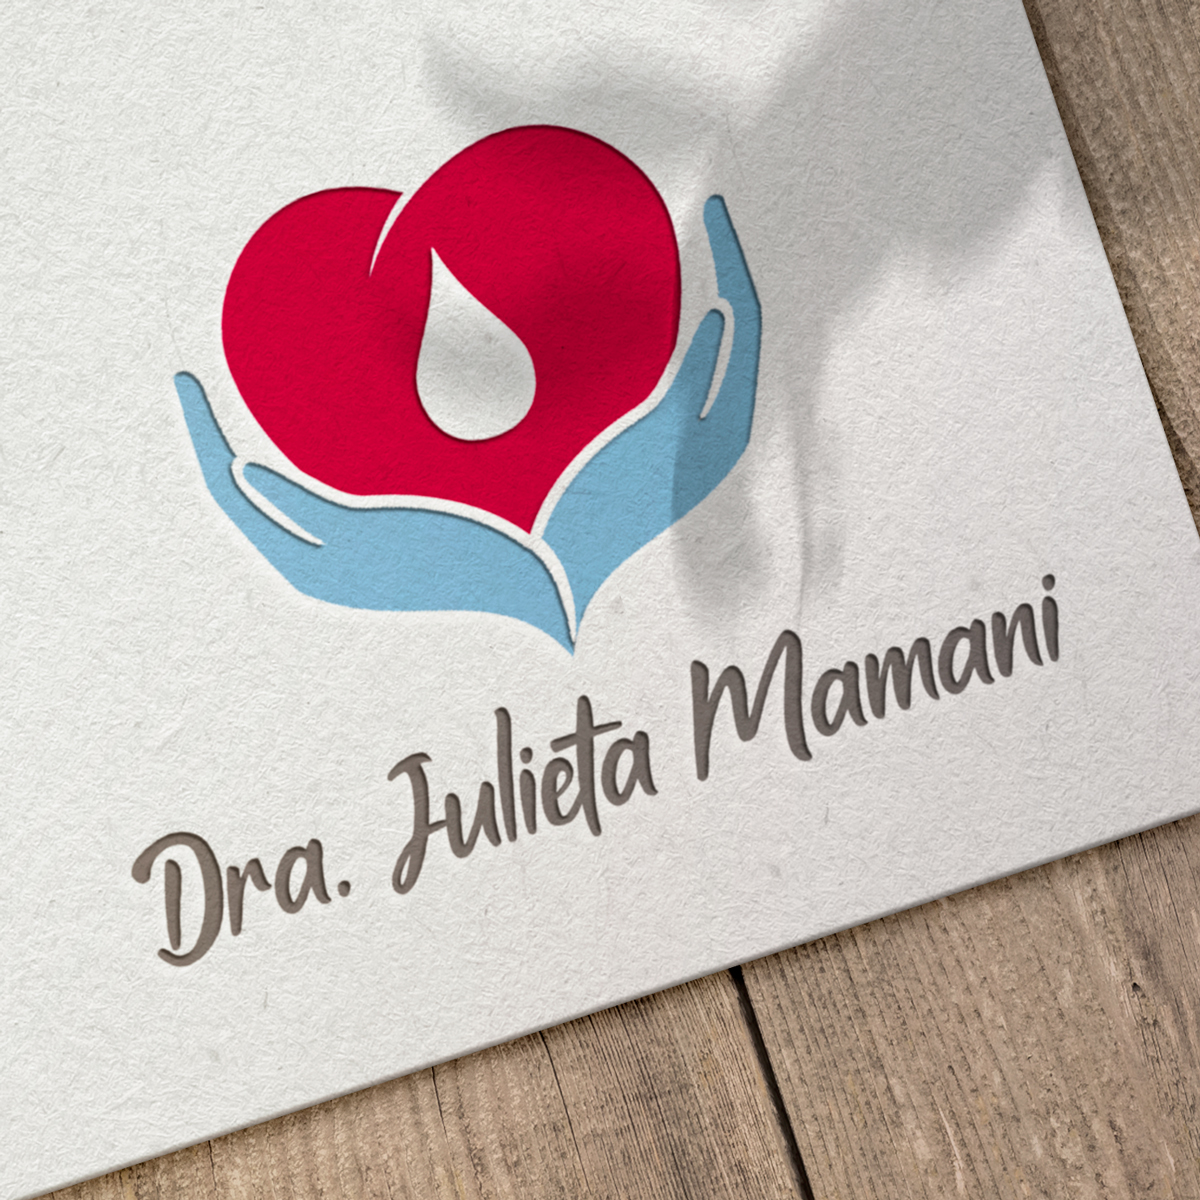 Diseño de Marca Dr Julieta Mamani - Especialista en Medicina Familiar y Diabetes -